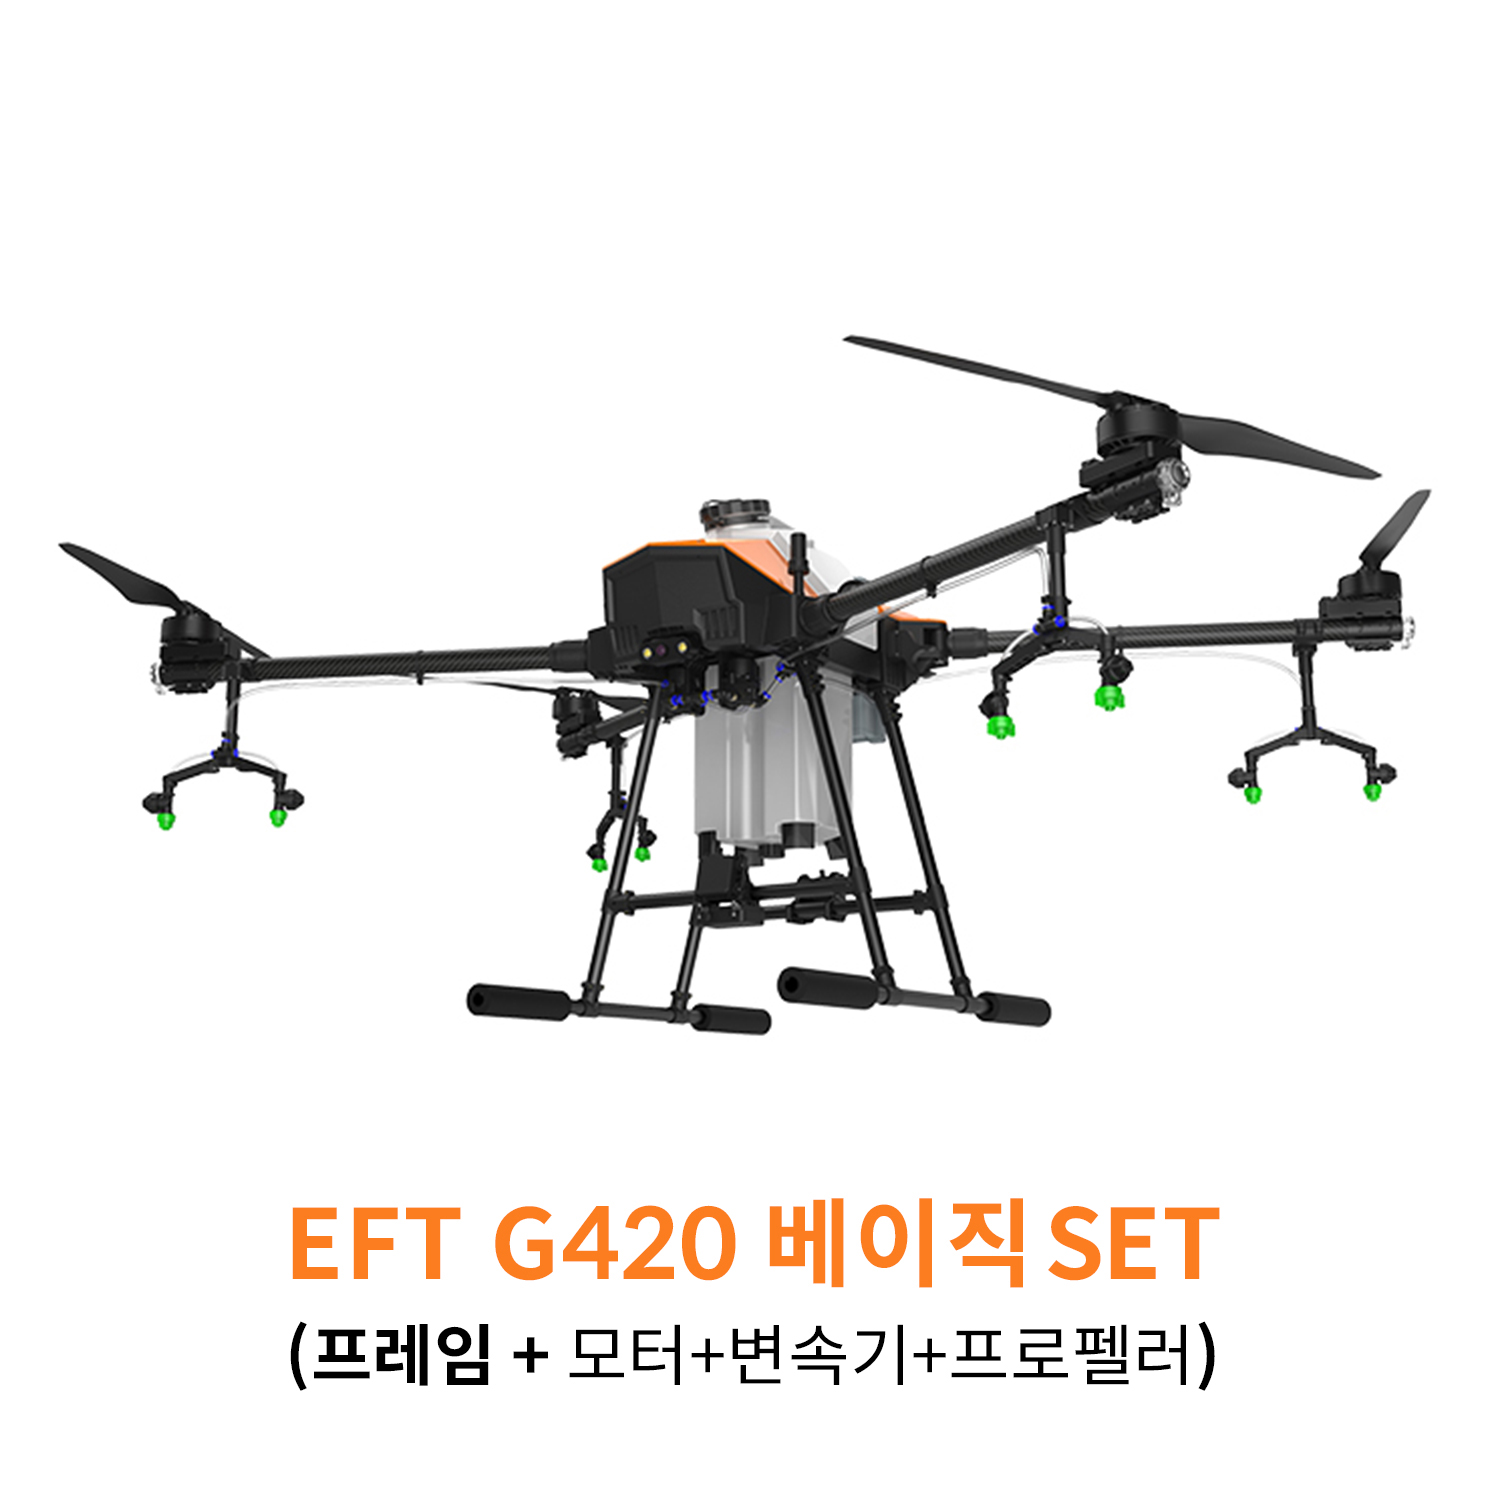 EFT G420 베이직 SET 농업 방제 드론 하비윙 x9plus 파워시스템 탑재 헬셀